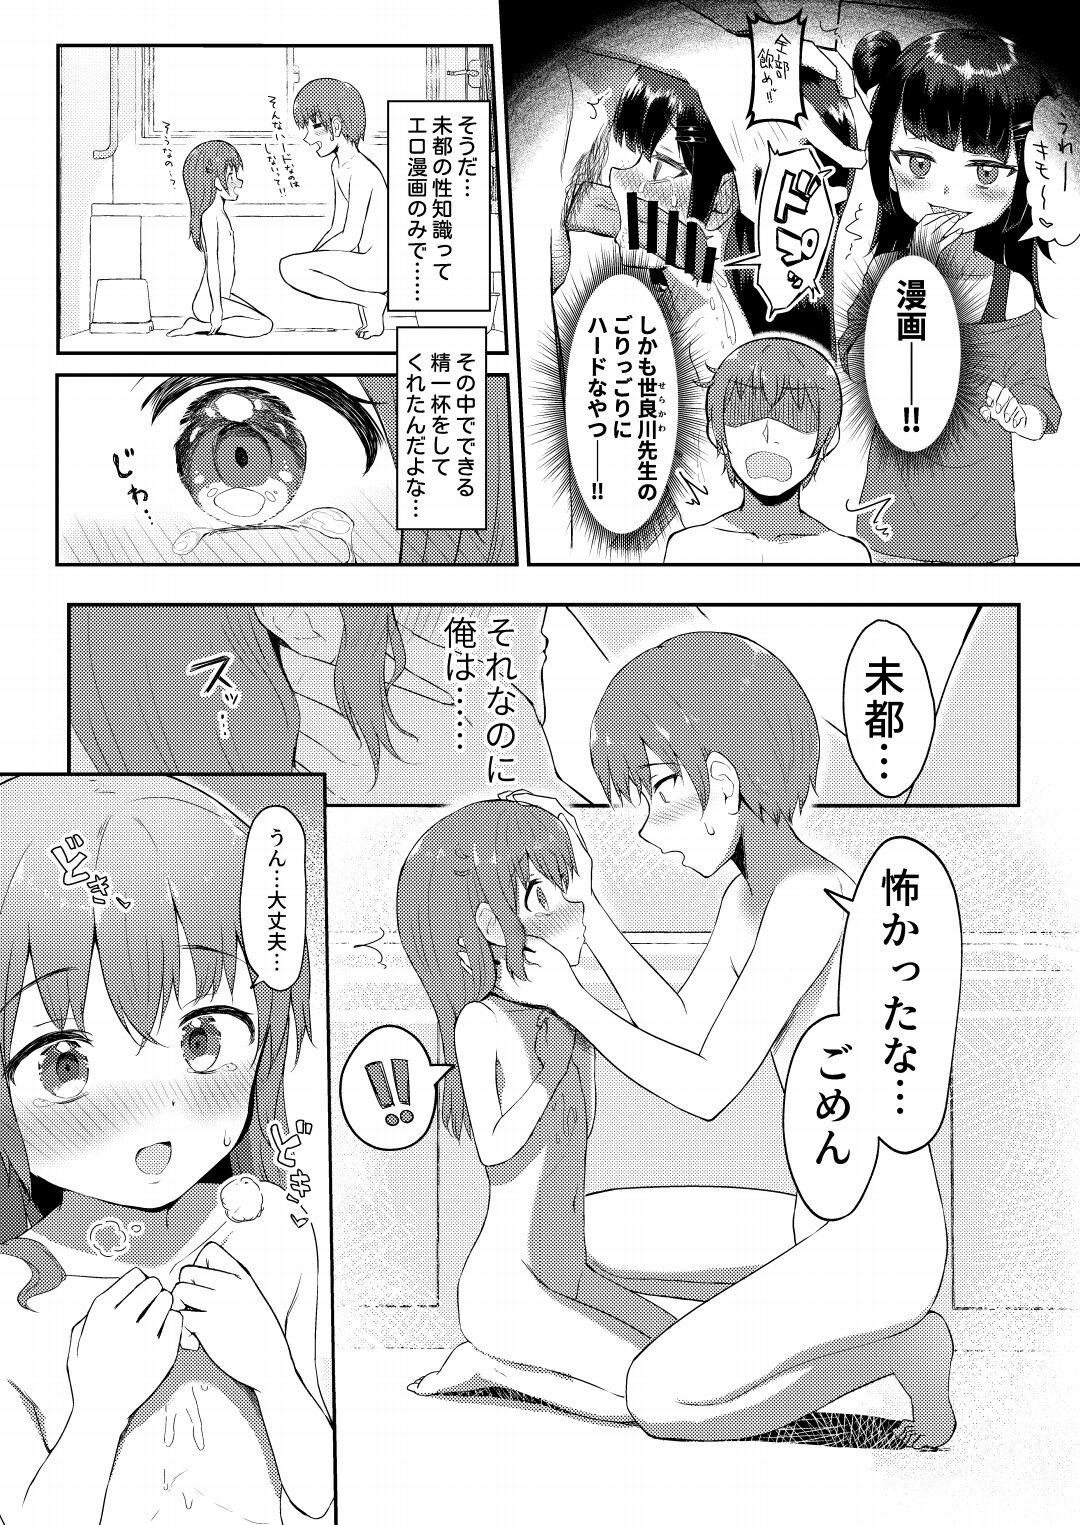 Hot Fucking Imouto-chan wa Arawaretai!! 4 - Original Innocent - Page 5